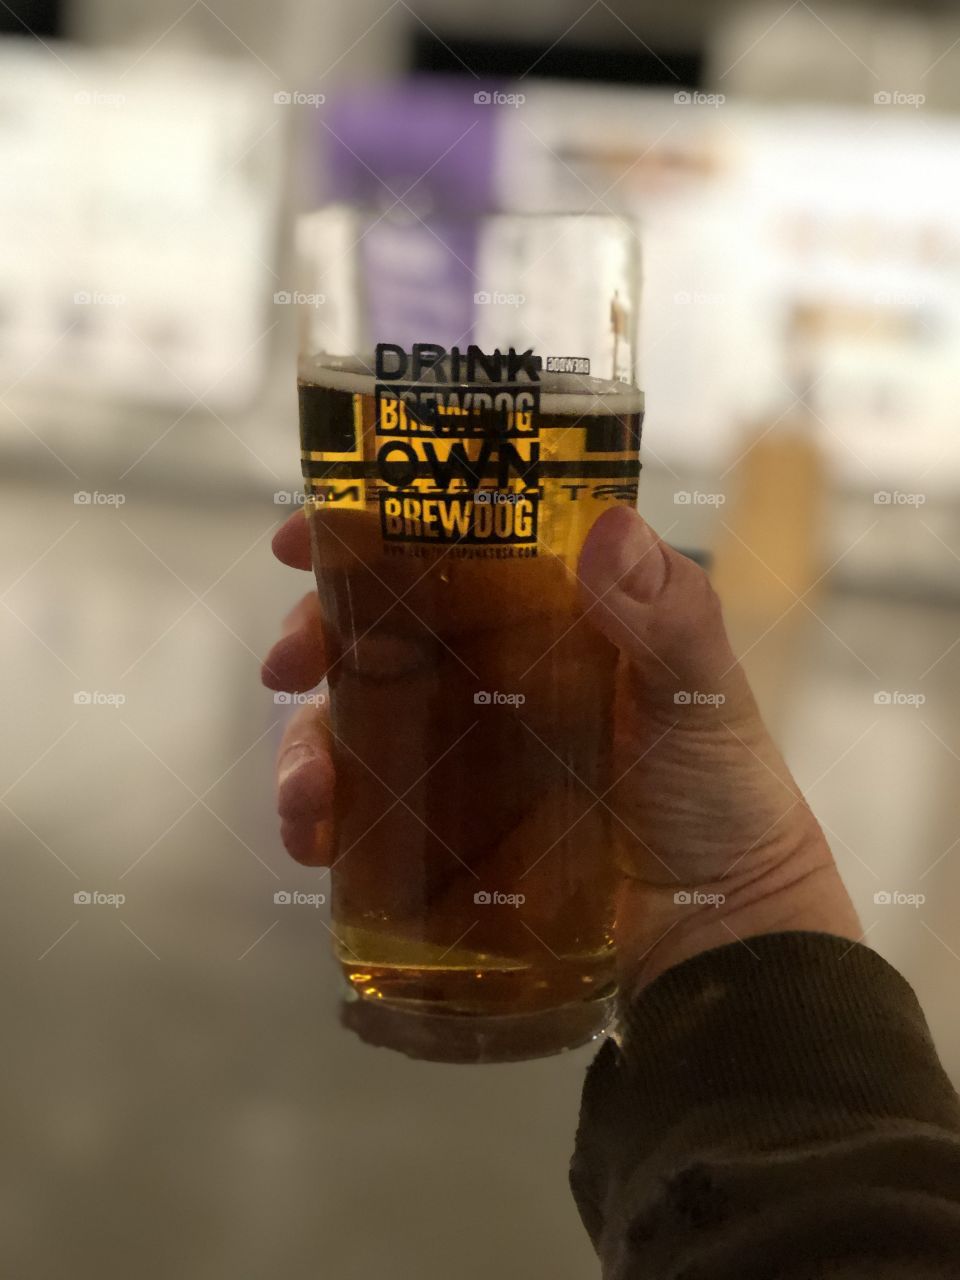 BREWDOG Brewery - Pint of Beer